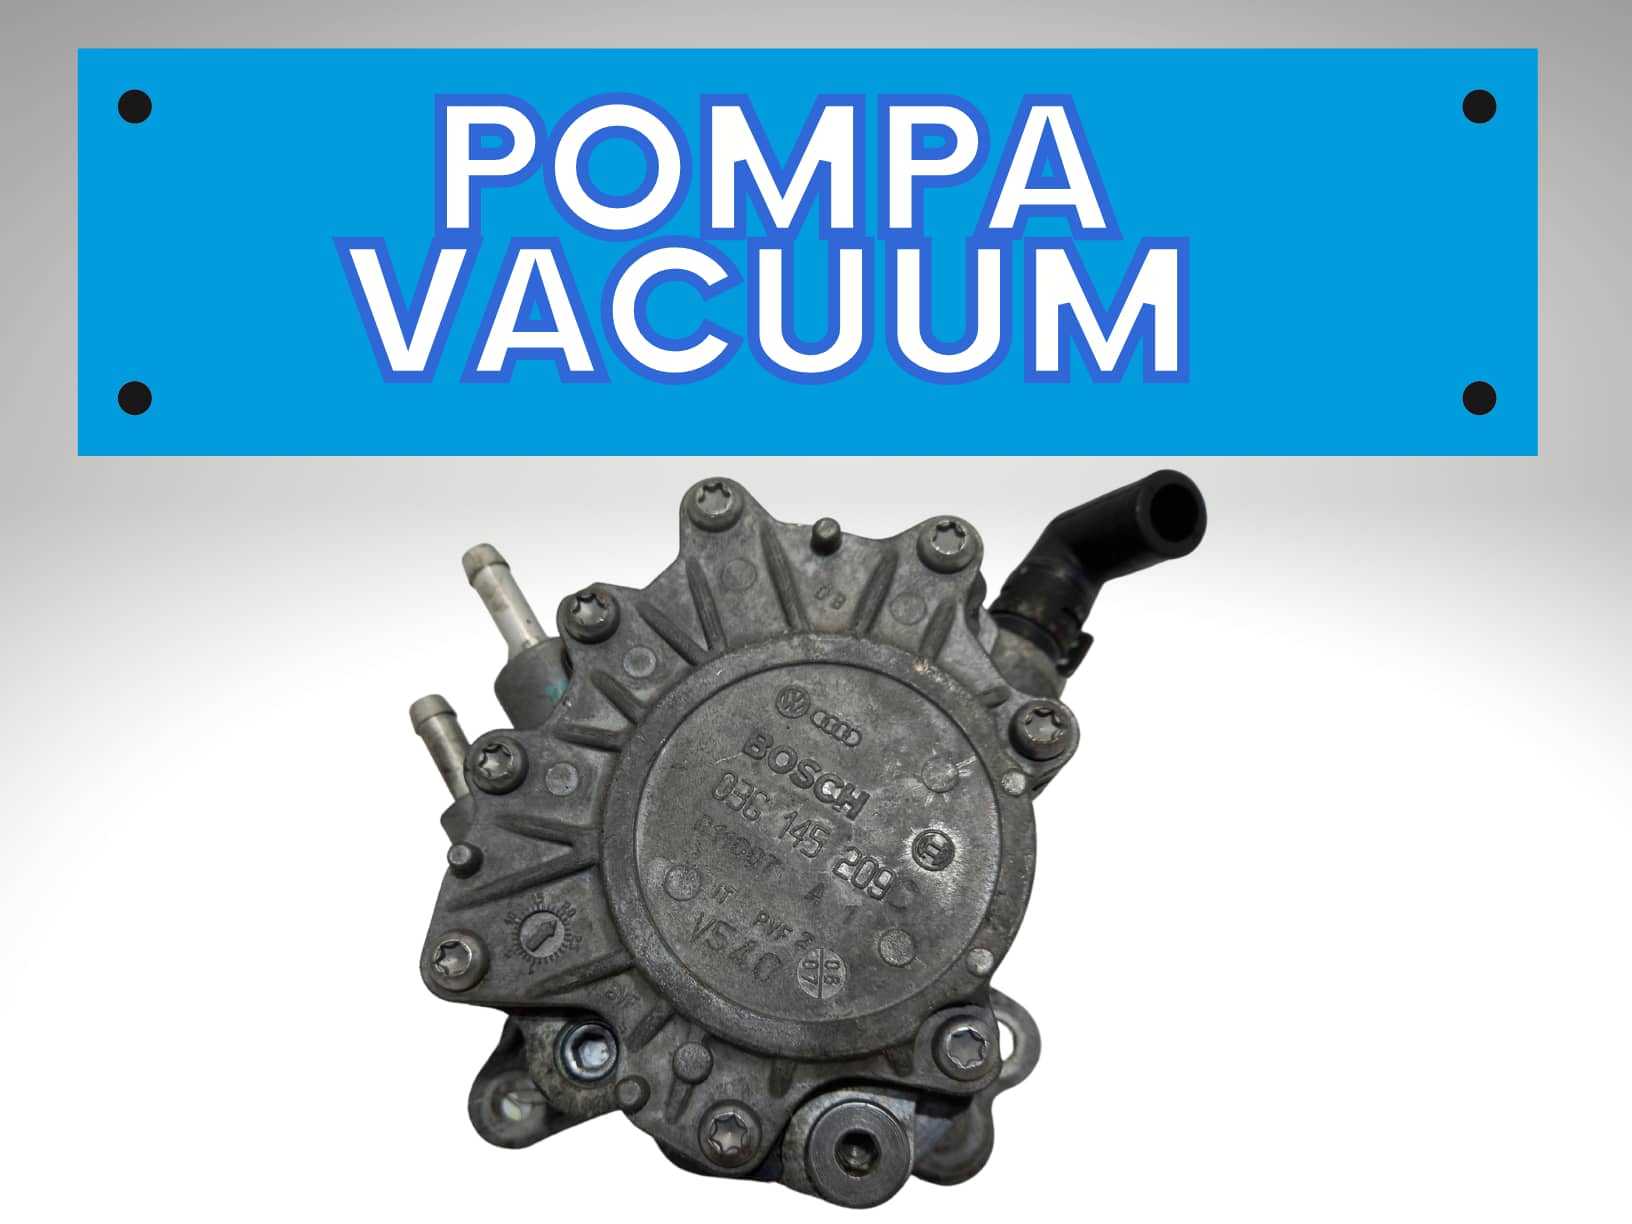 Pompa Vacuum